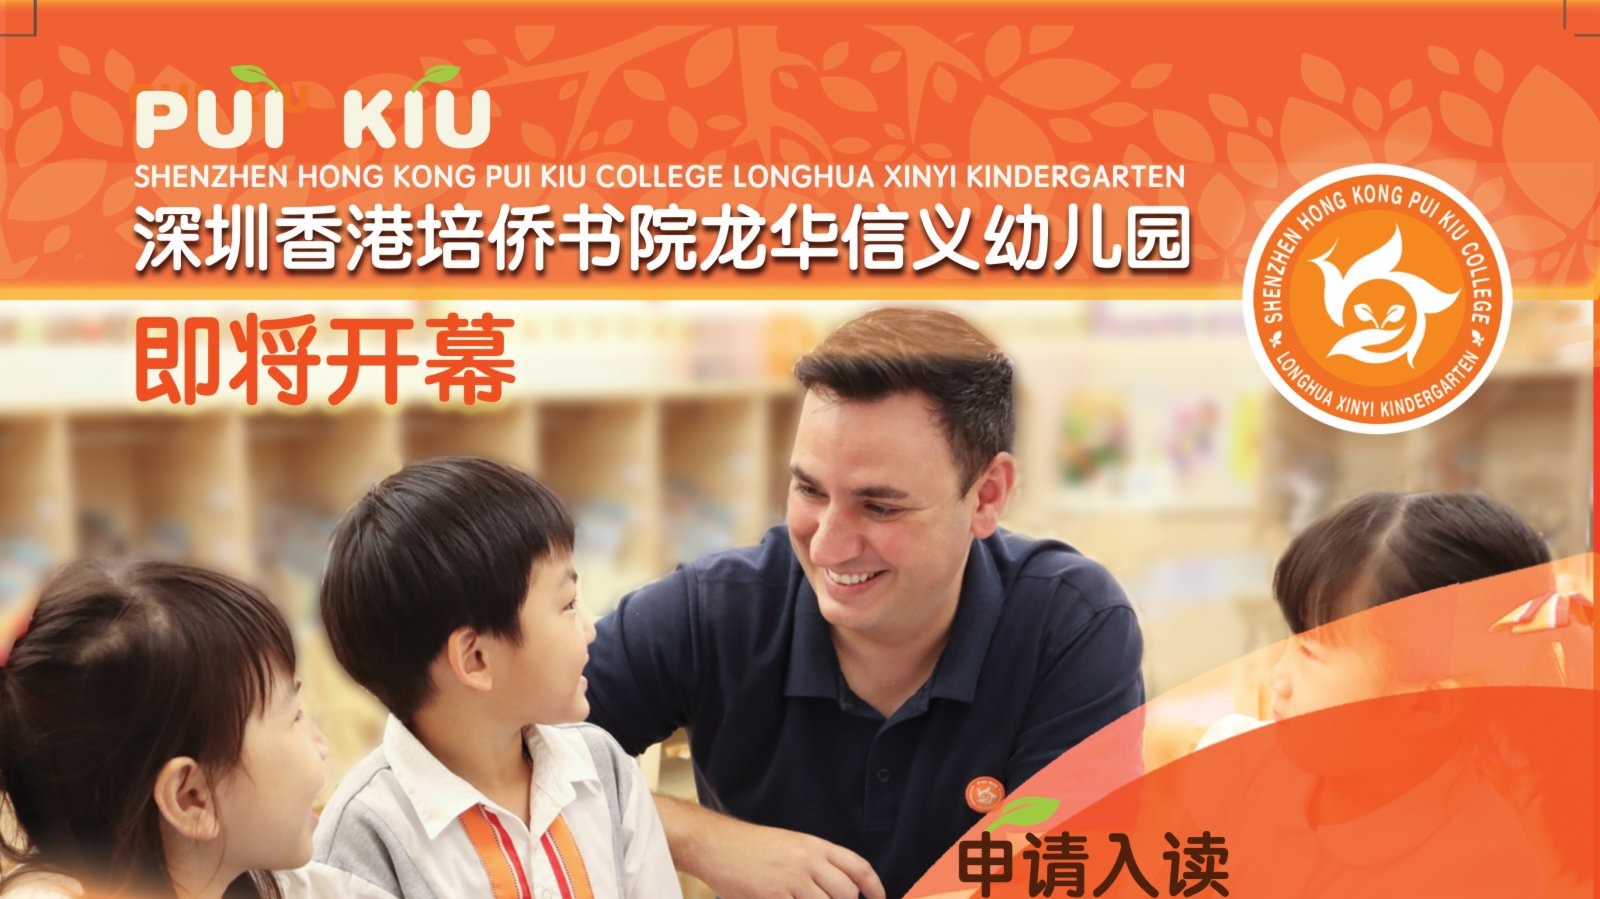 深圳香港培僑書院龍華信義幼兒園今年九月開學